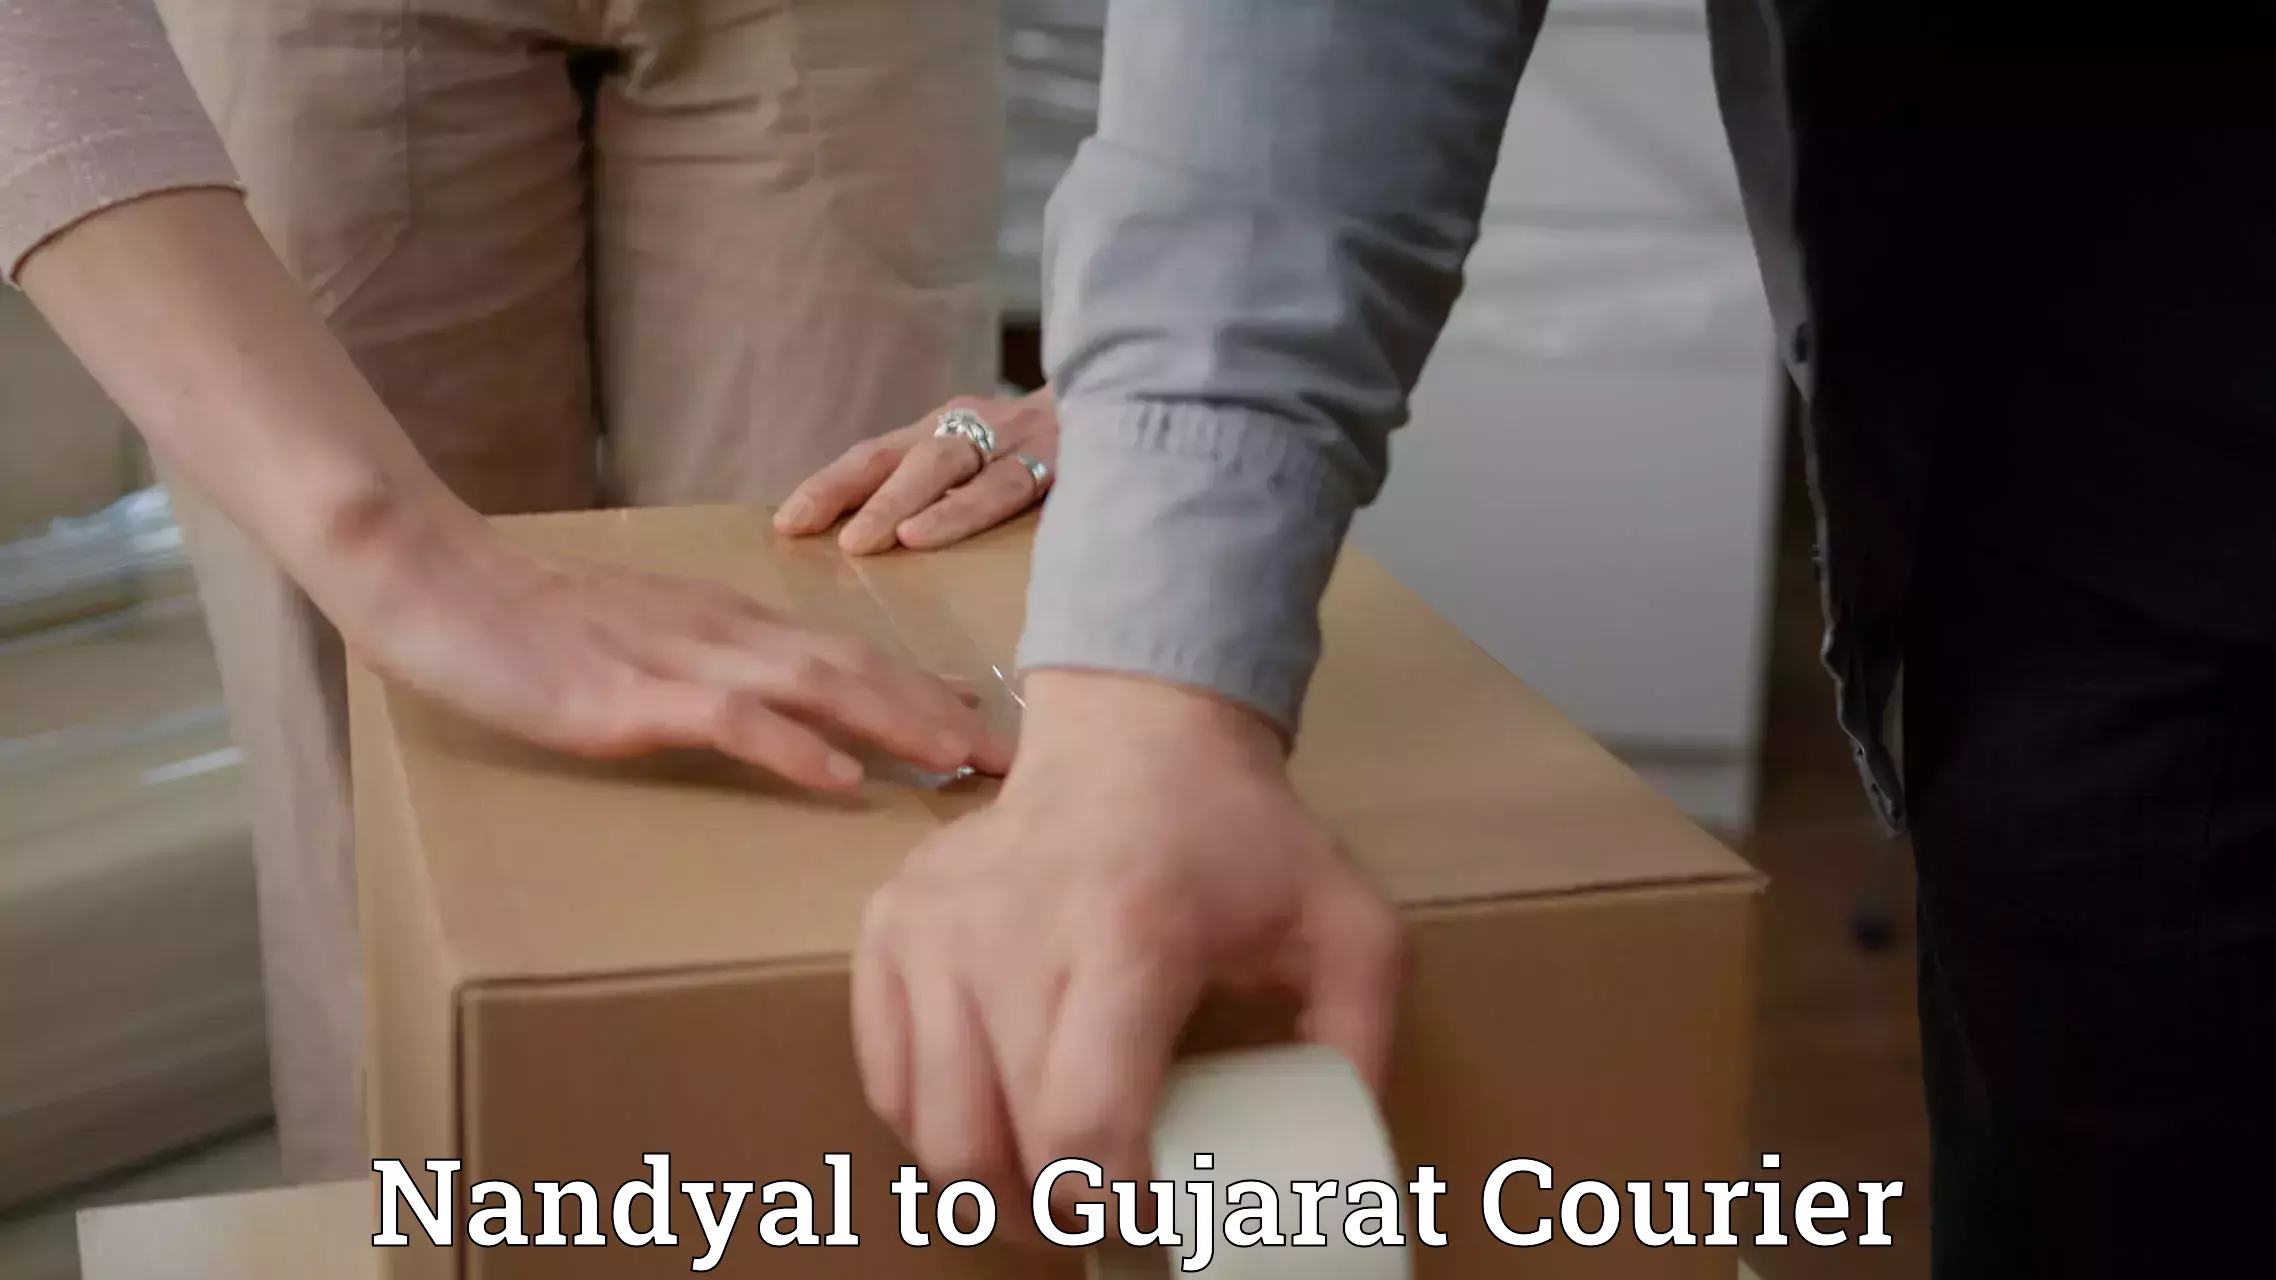 Shipping and handling Nandyal to NIT Surat